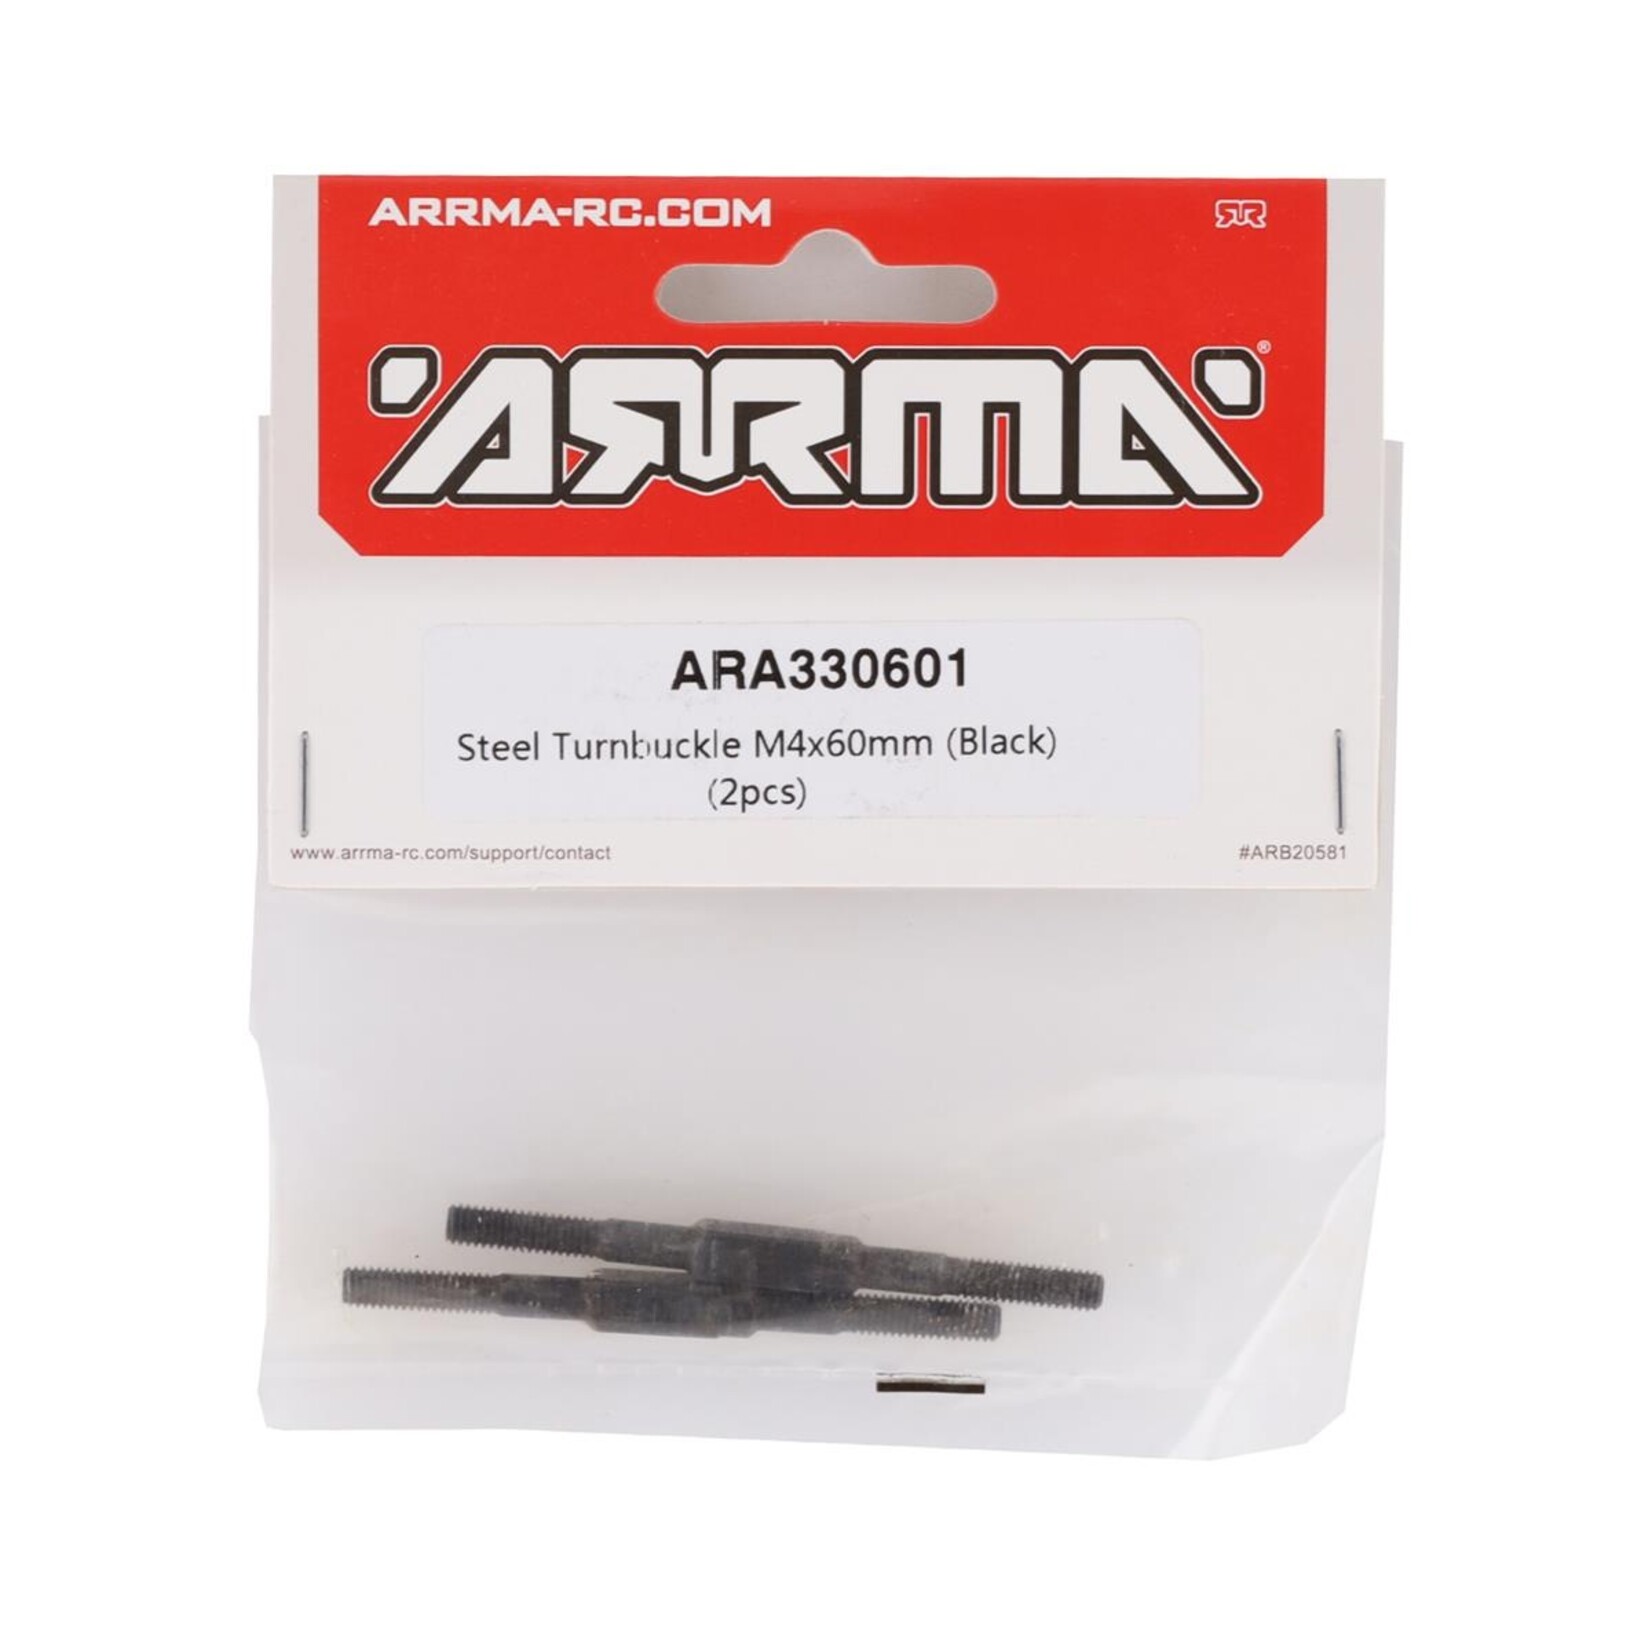 ARRMA Arrma Mojave 6S BLX 4x60mm Steel Turnbuckle (2) # ARA330601